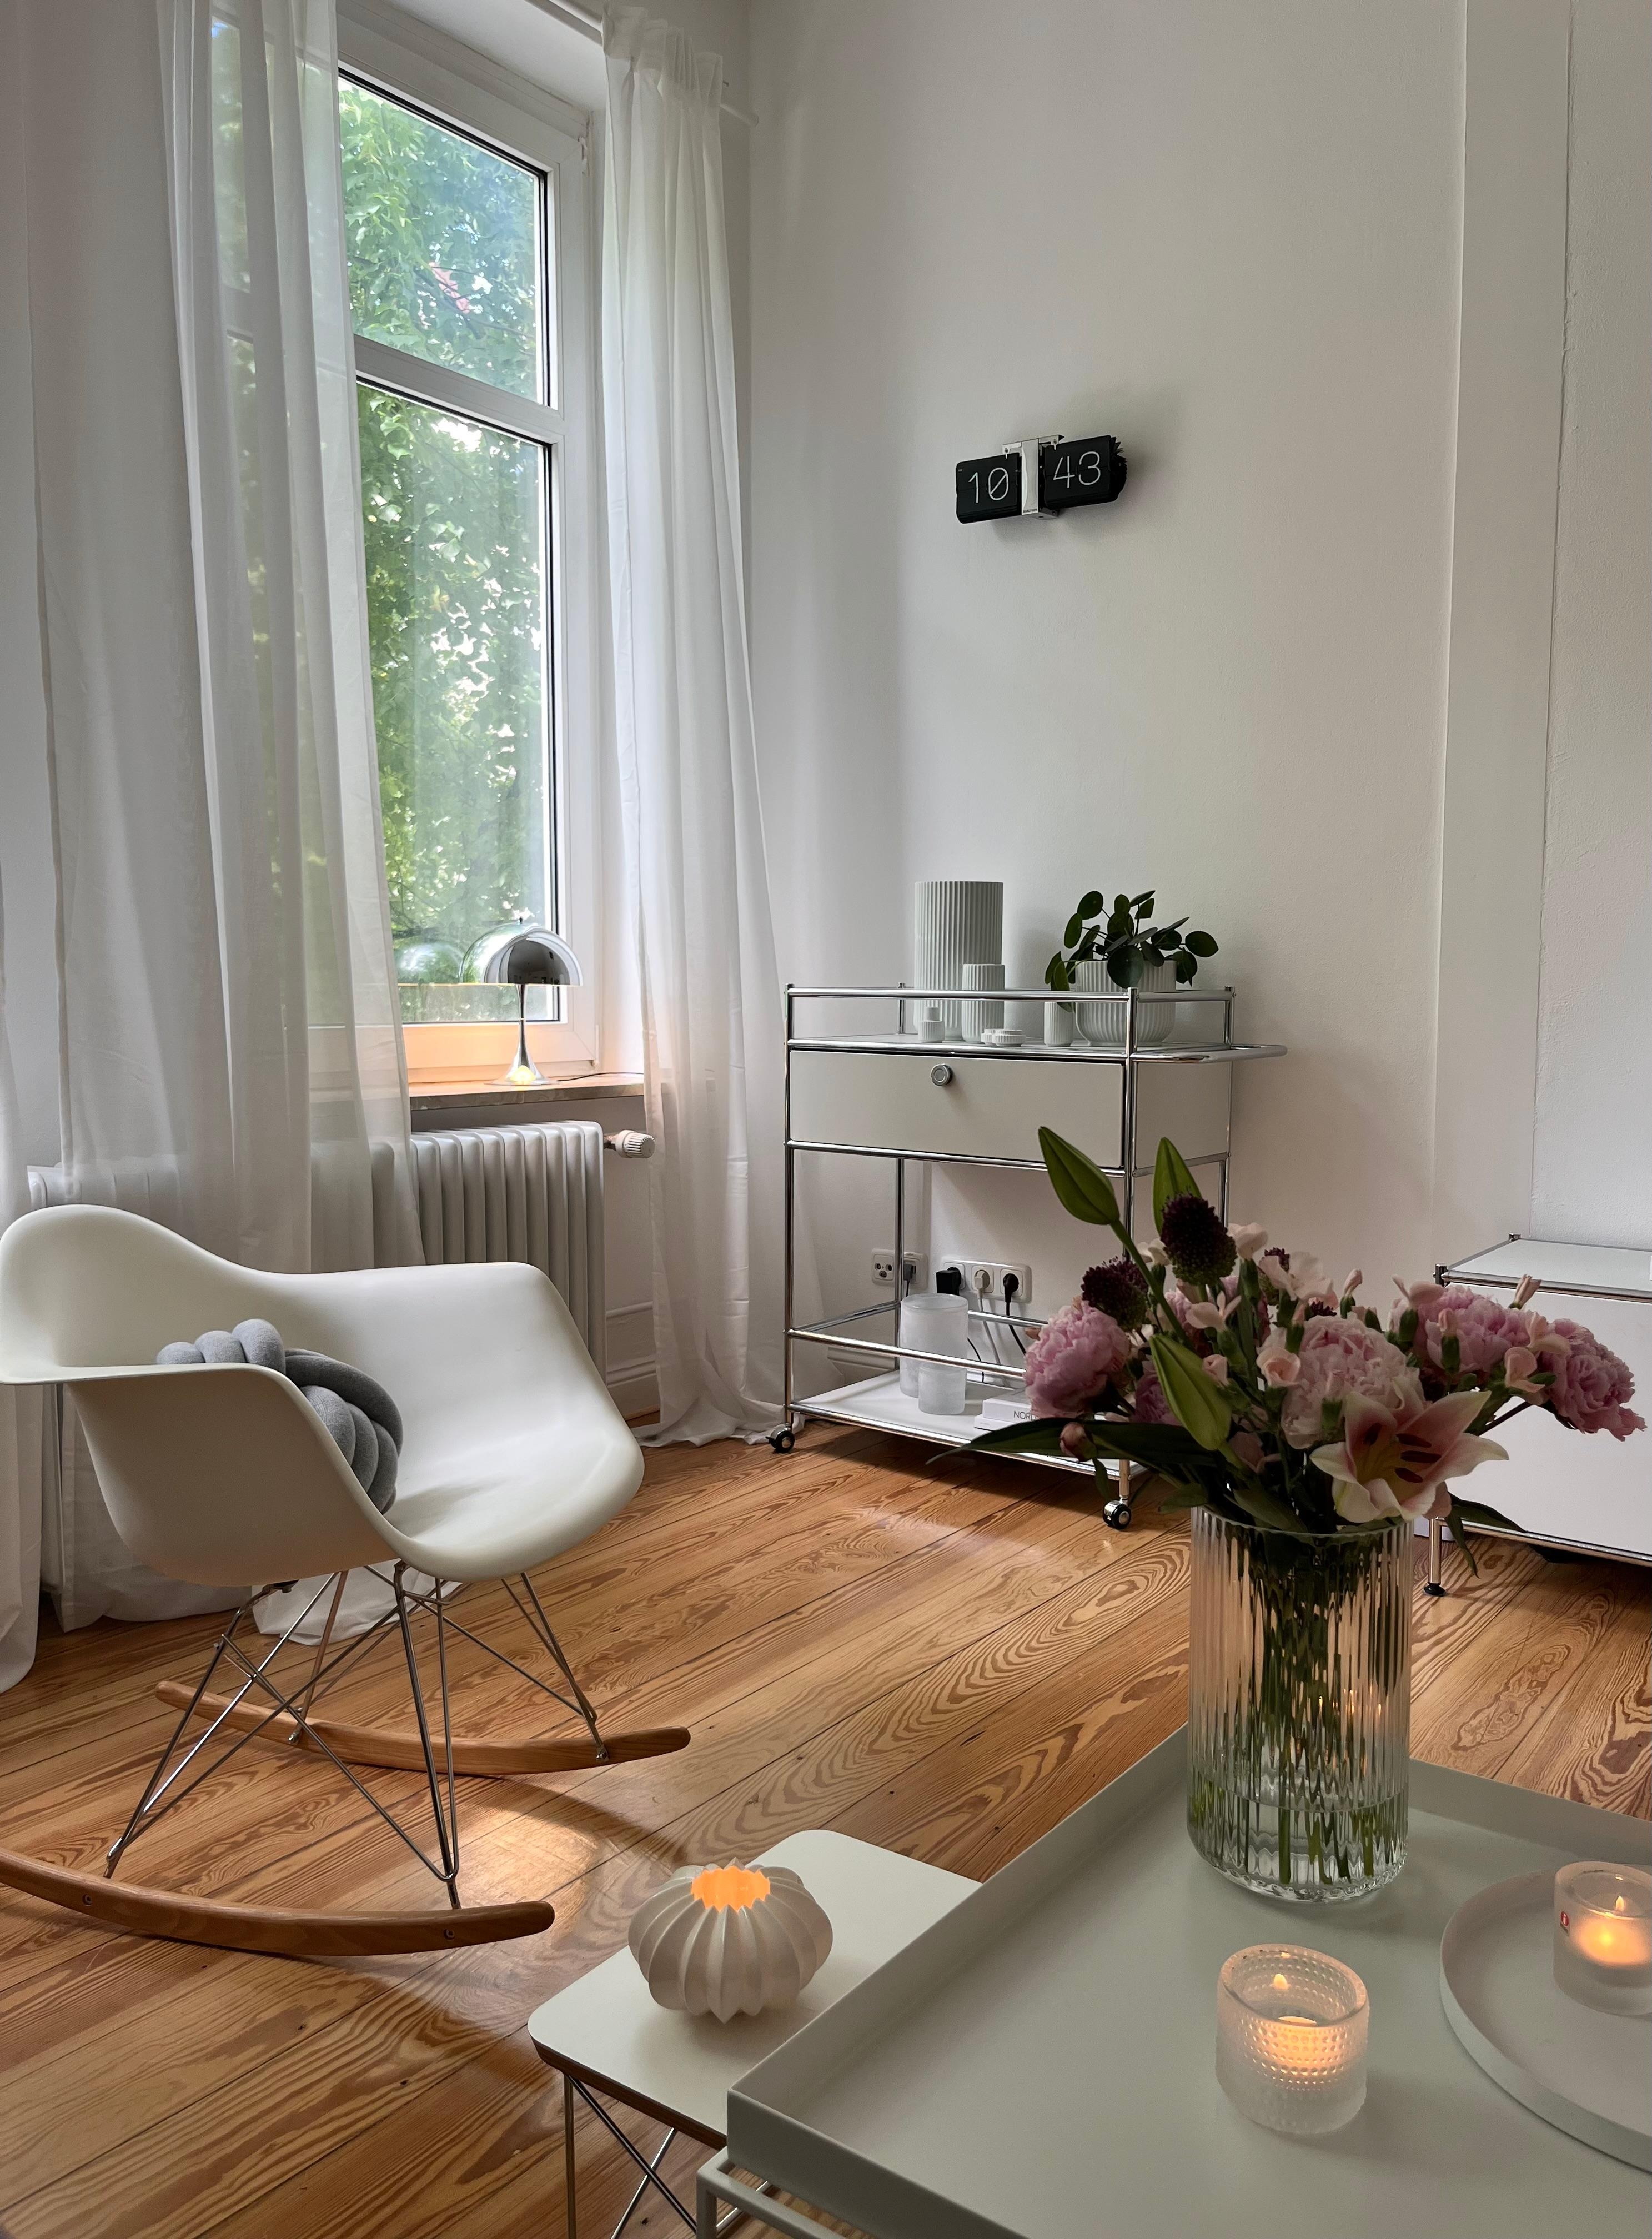 #wohnzimmer #altbauliebe #skandinavischwohnen #frischeblumen #danishdesign #leuchtenliebe 